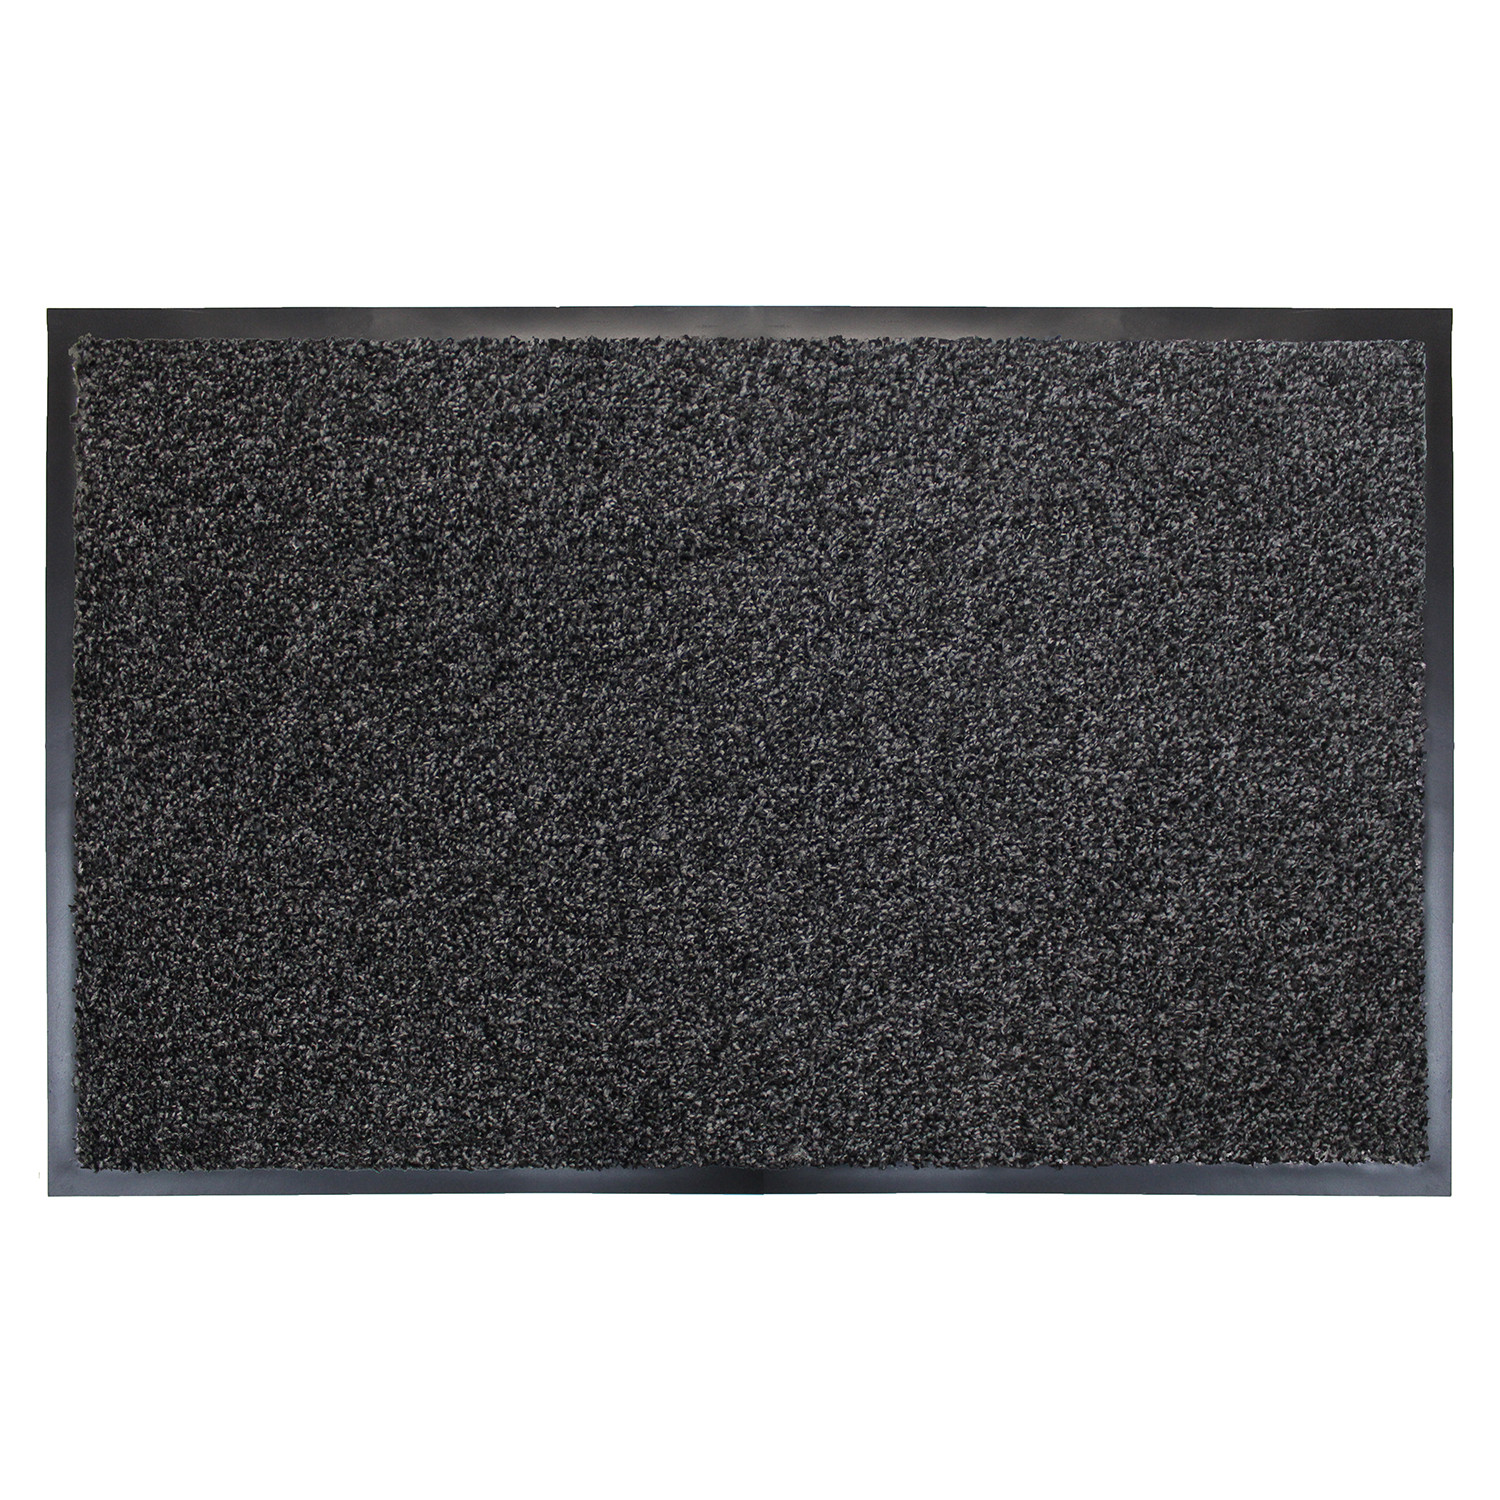 Primeur Black Barrier Doormat 60 x 40cm Image 1